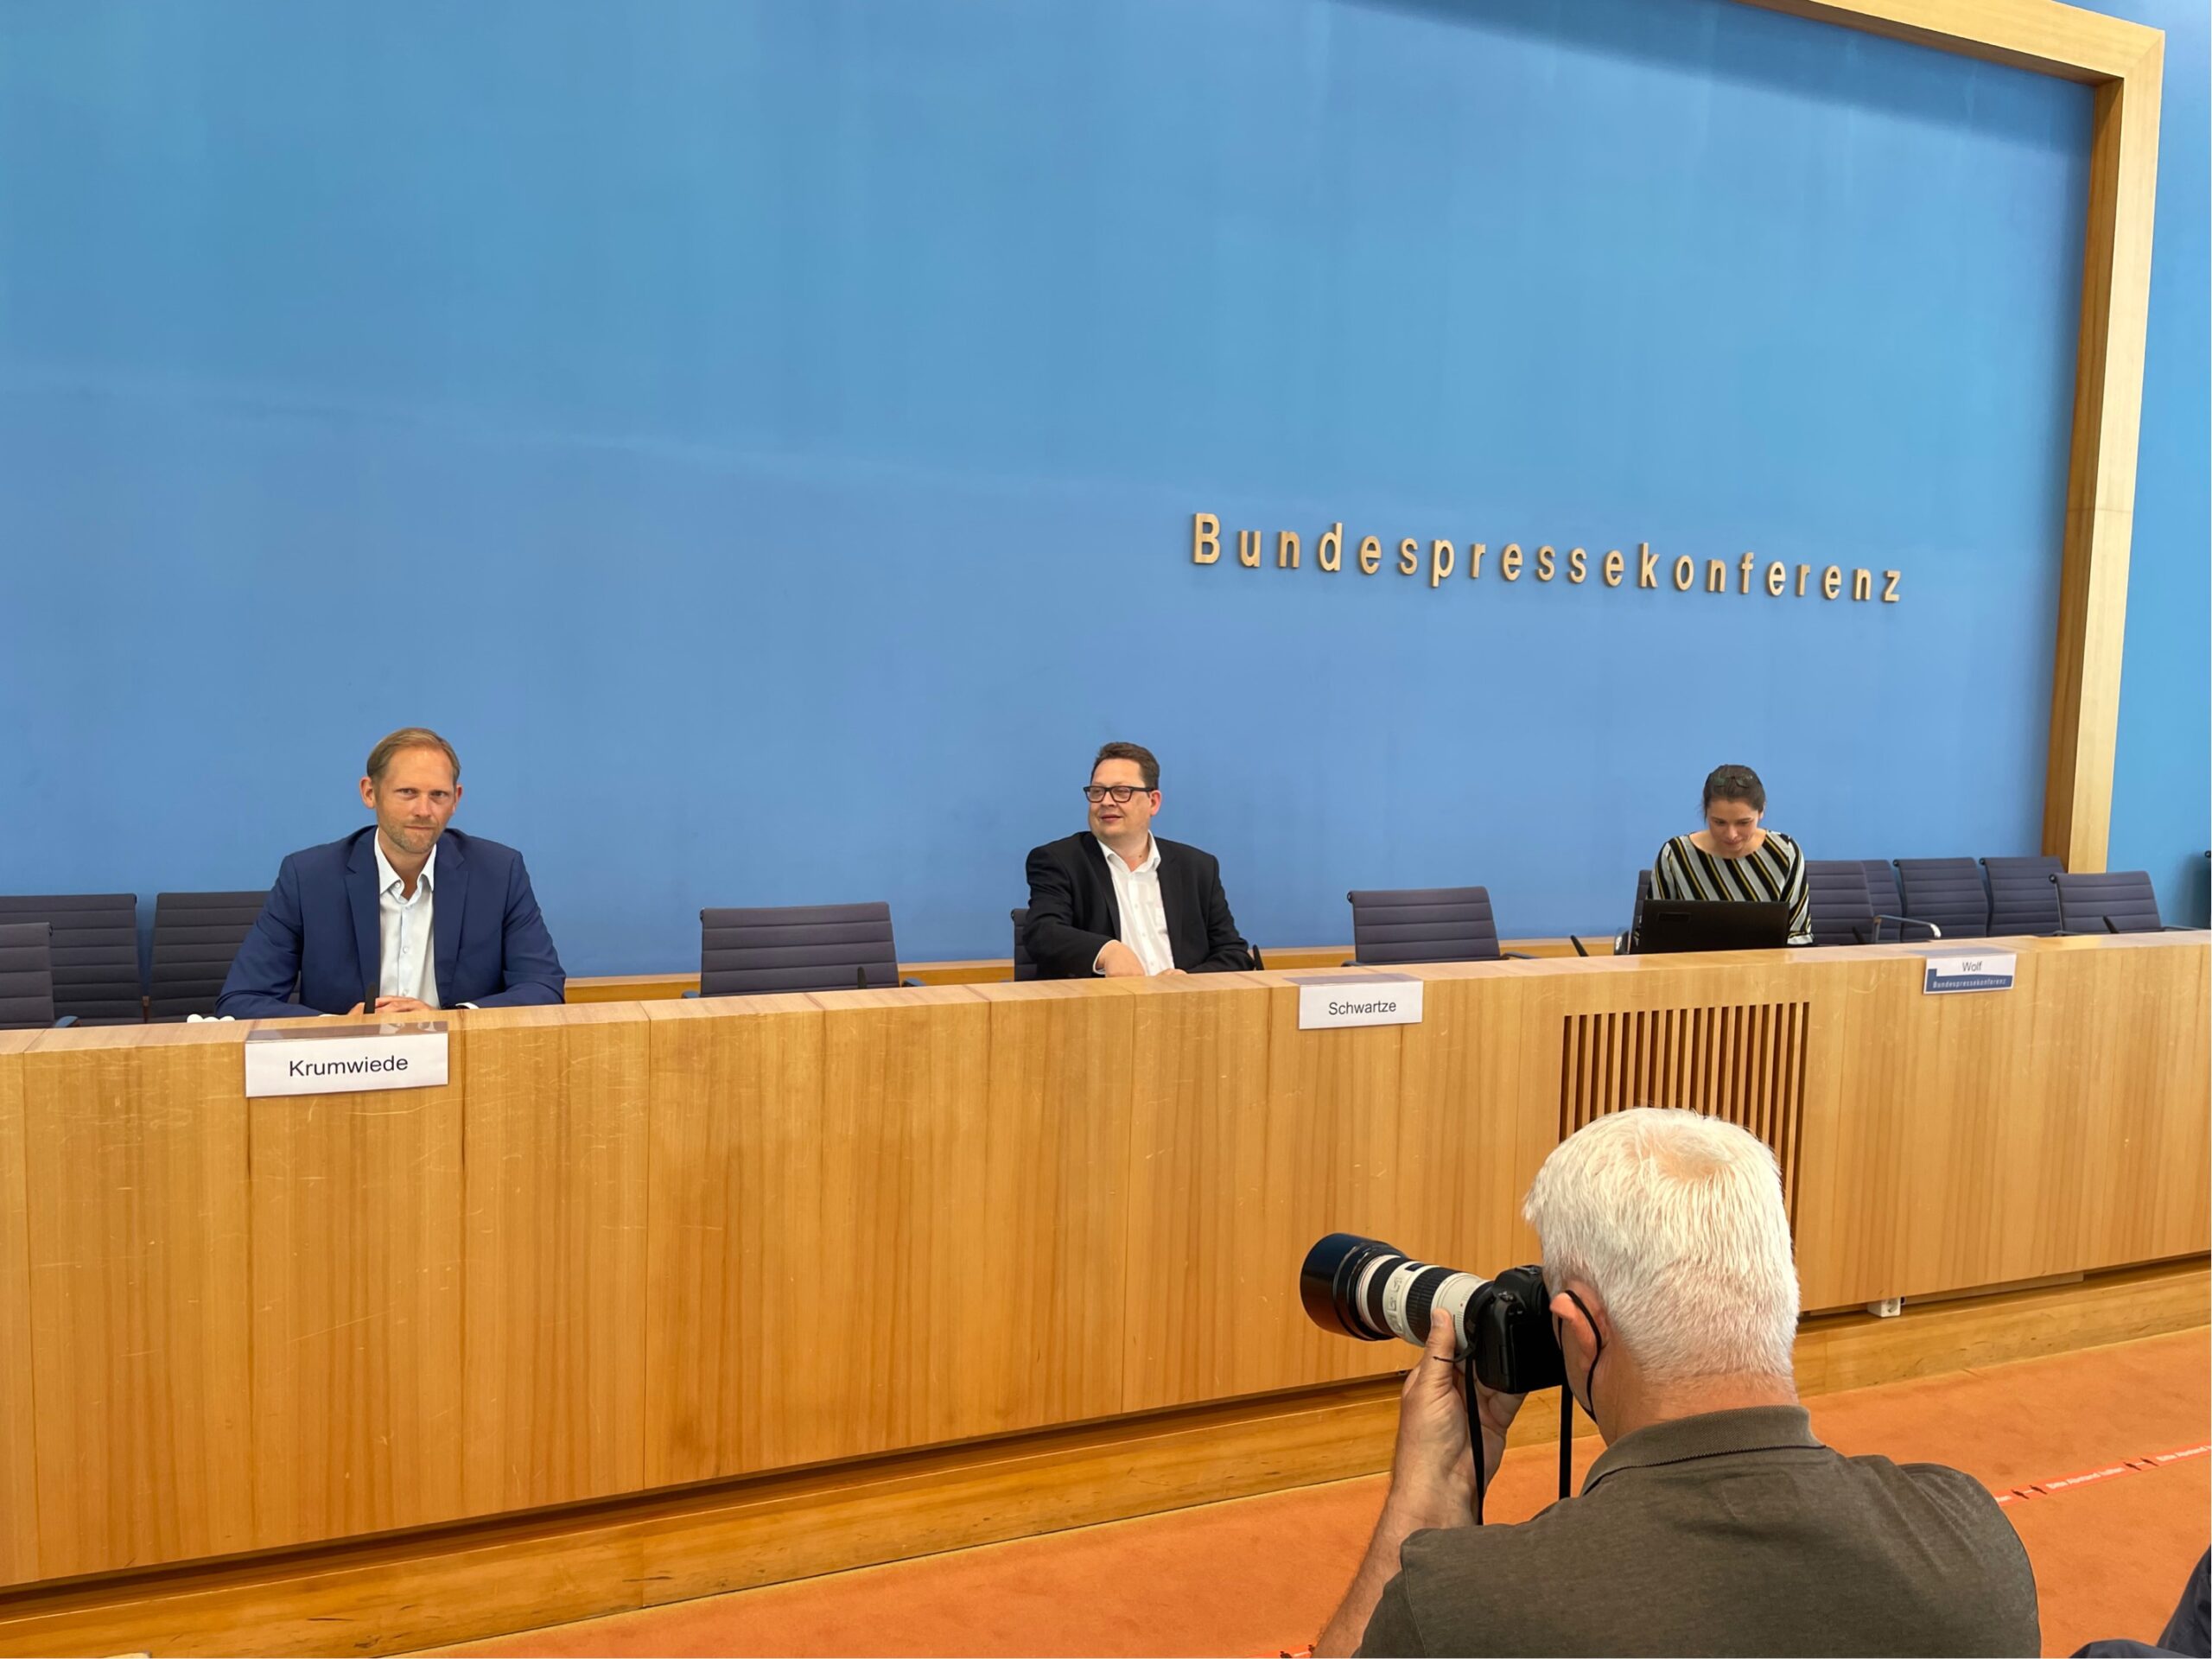 Abbildung Bundespressekonferenz